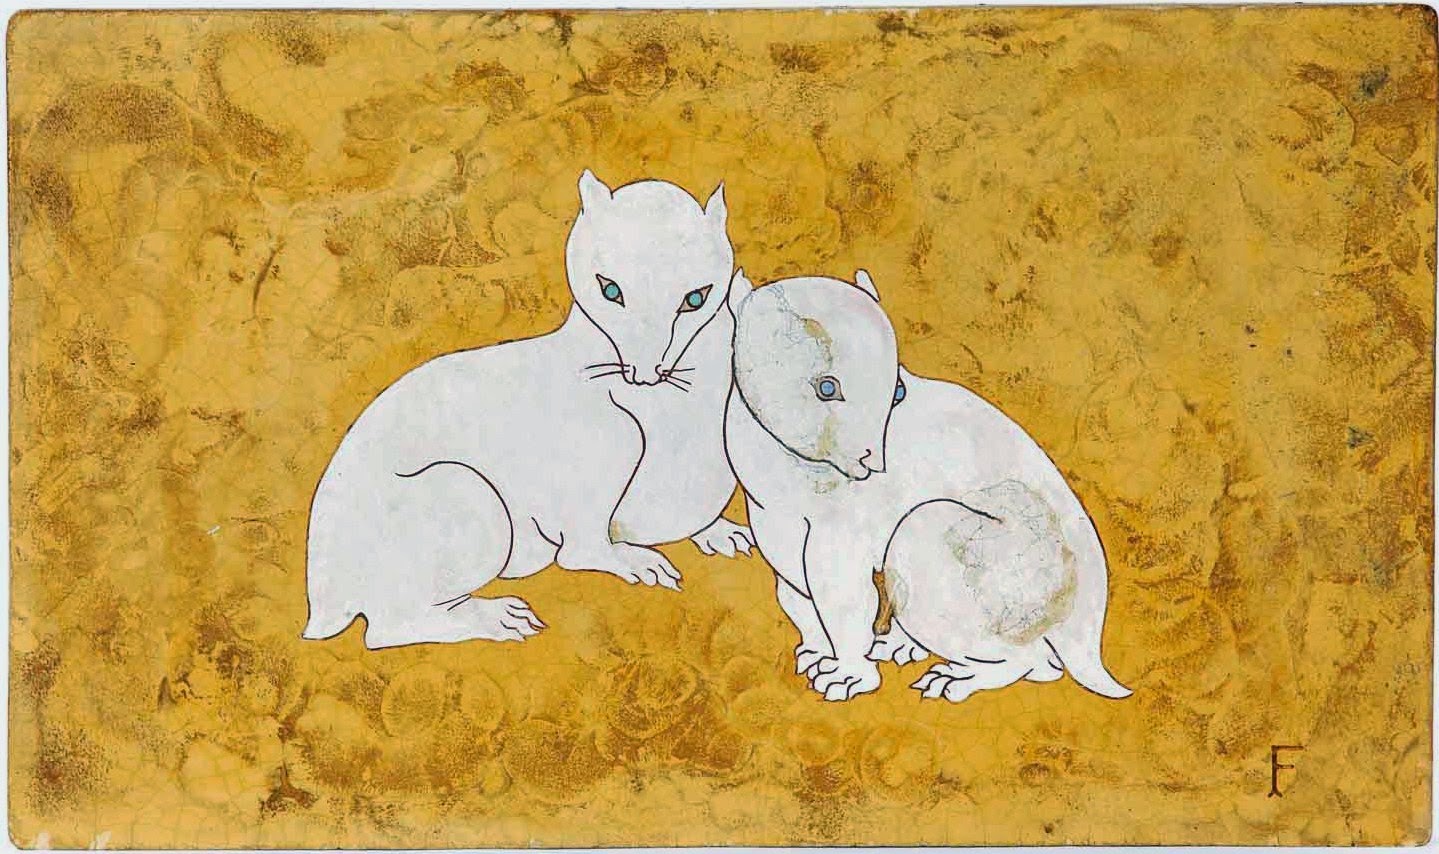 Panneau en “Lap” de Foujita : Deux chatons du désert